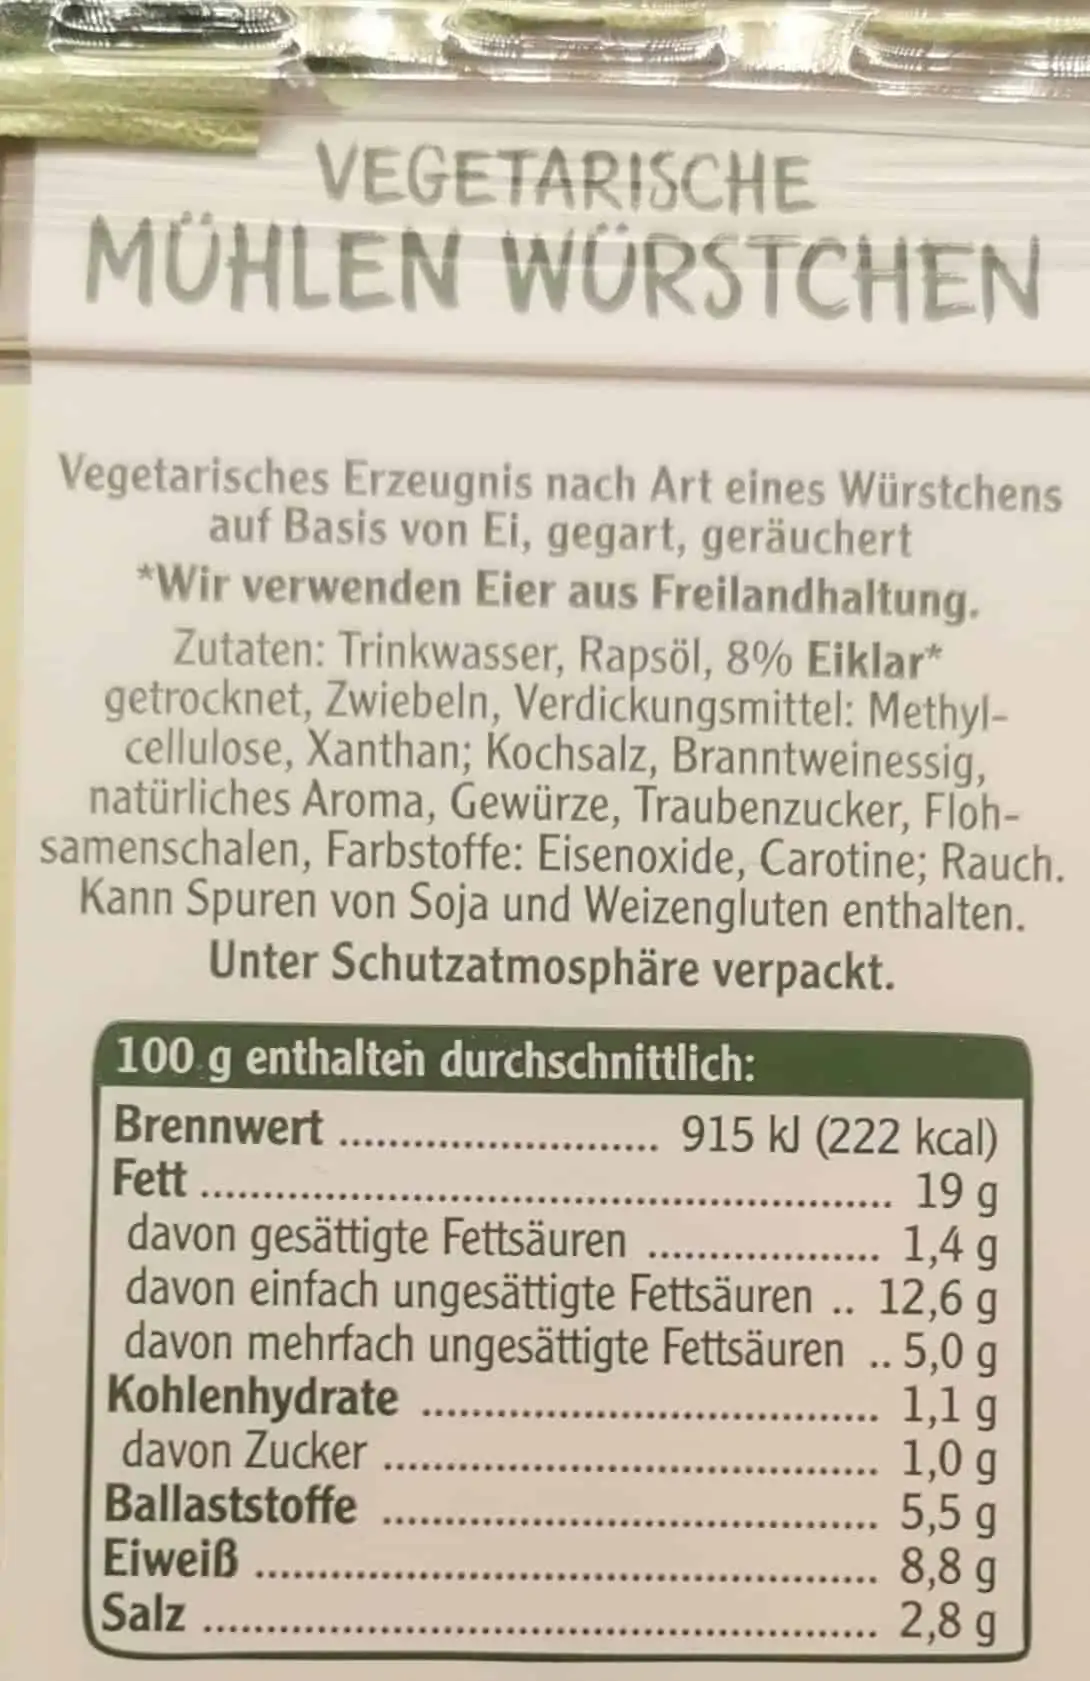 Rügenwalder Mühle: Vegetarische Mühlen Würstchen Inhaltsstoffe & Nährwerte